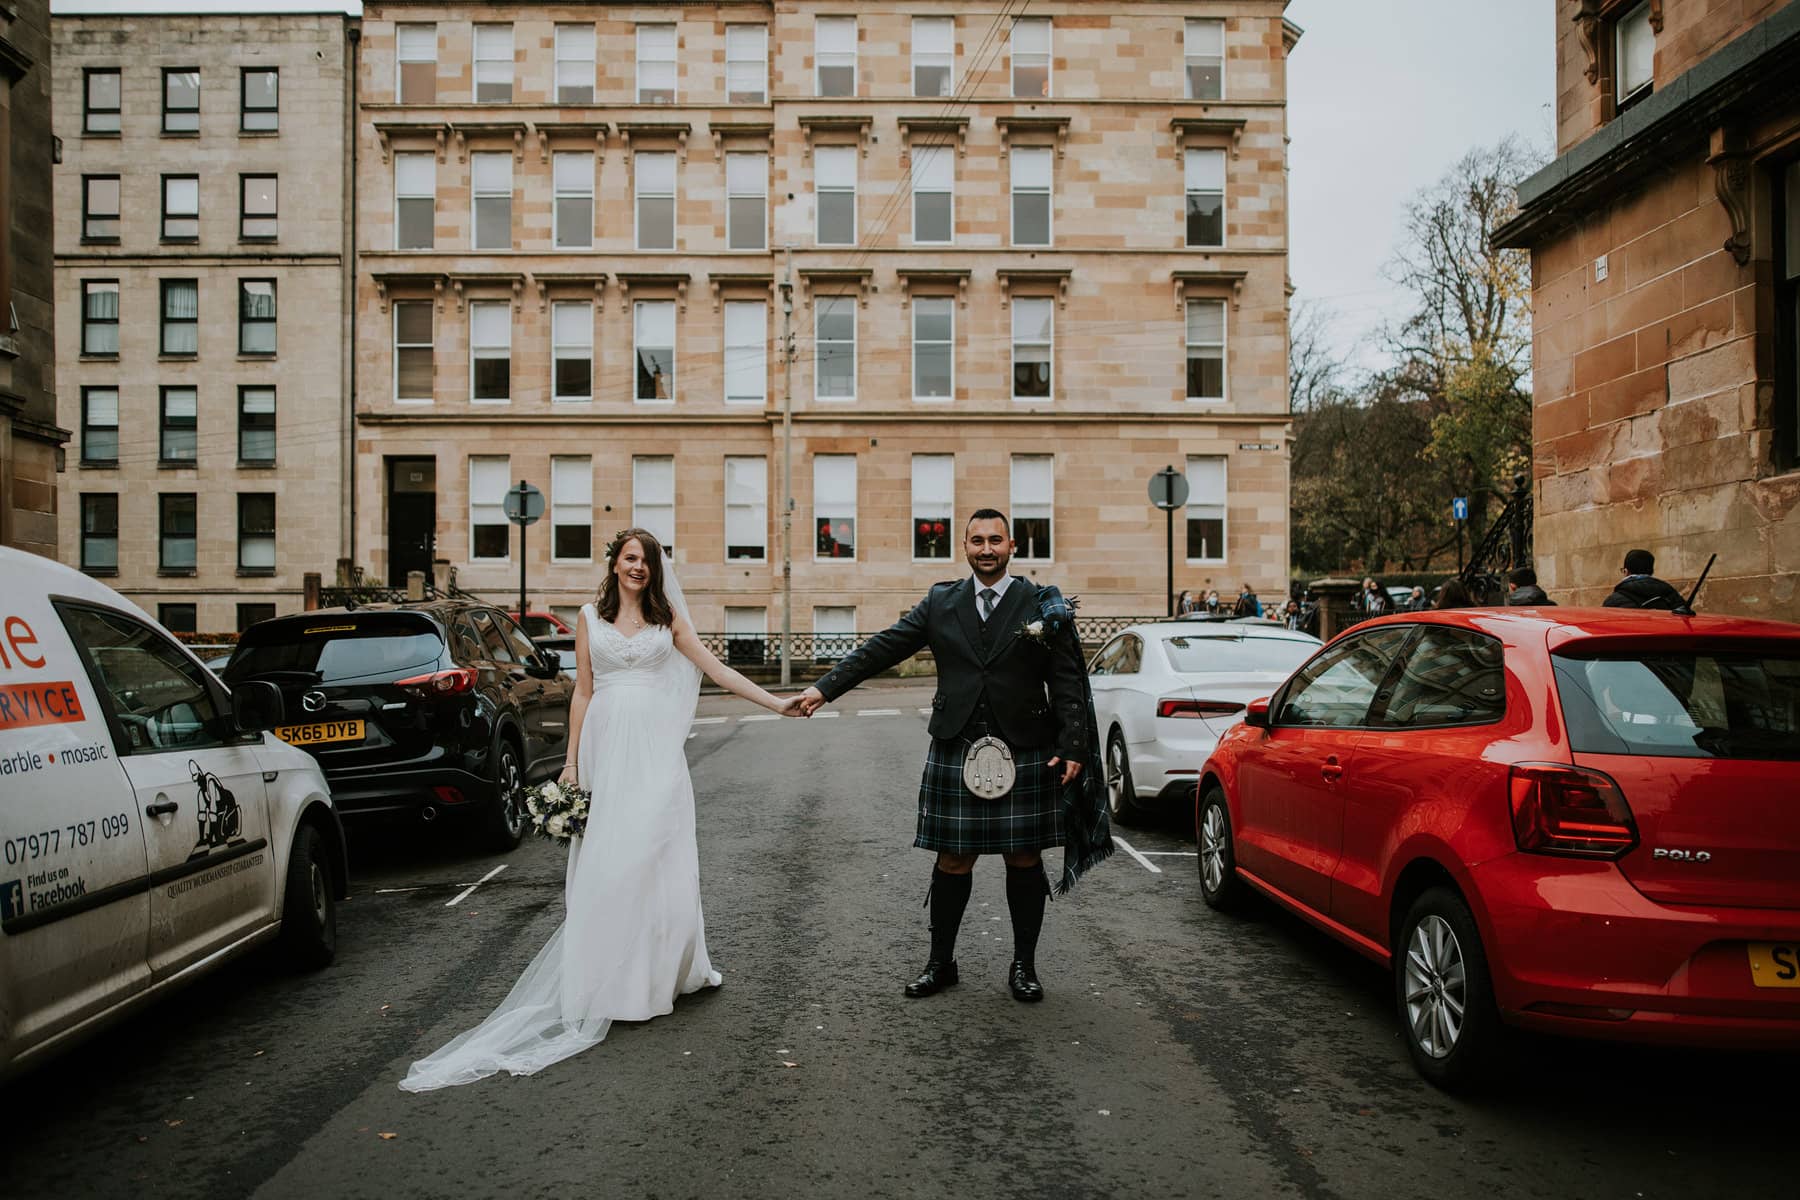 West end of Glasgow wedding